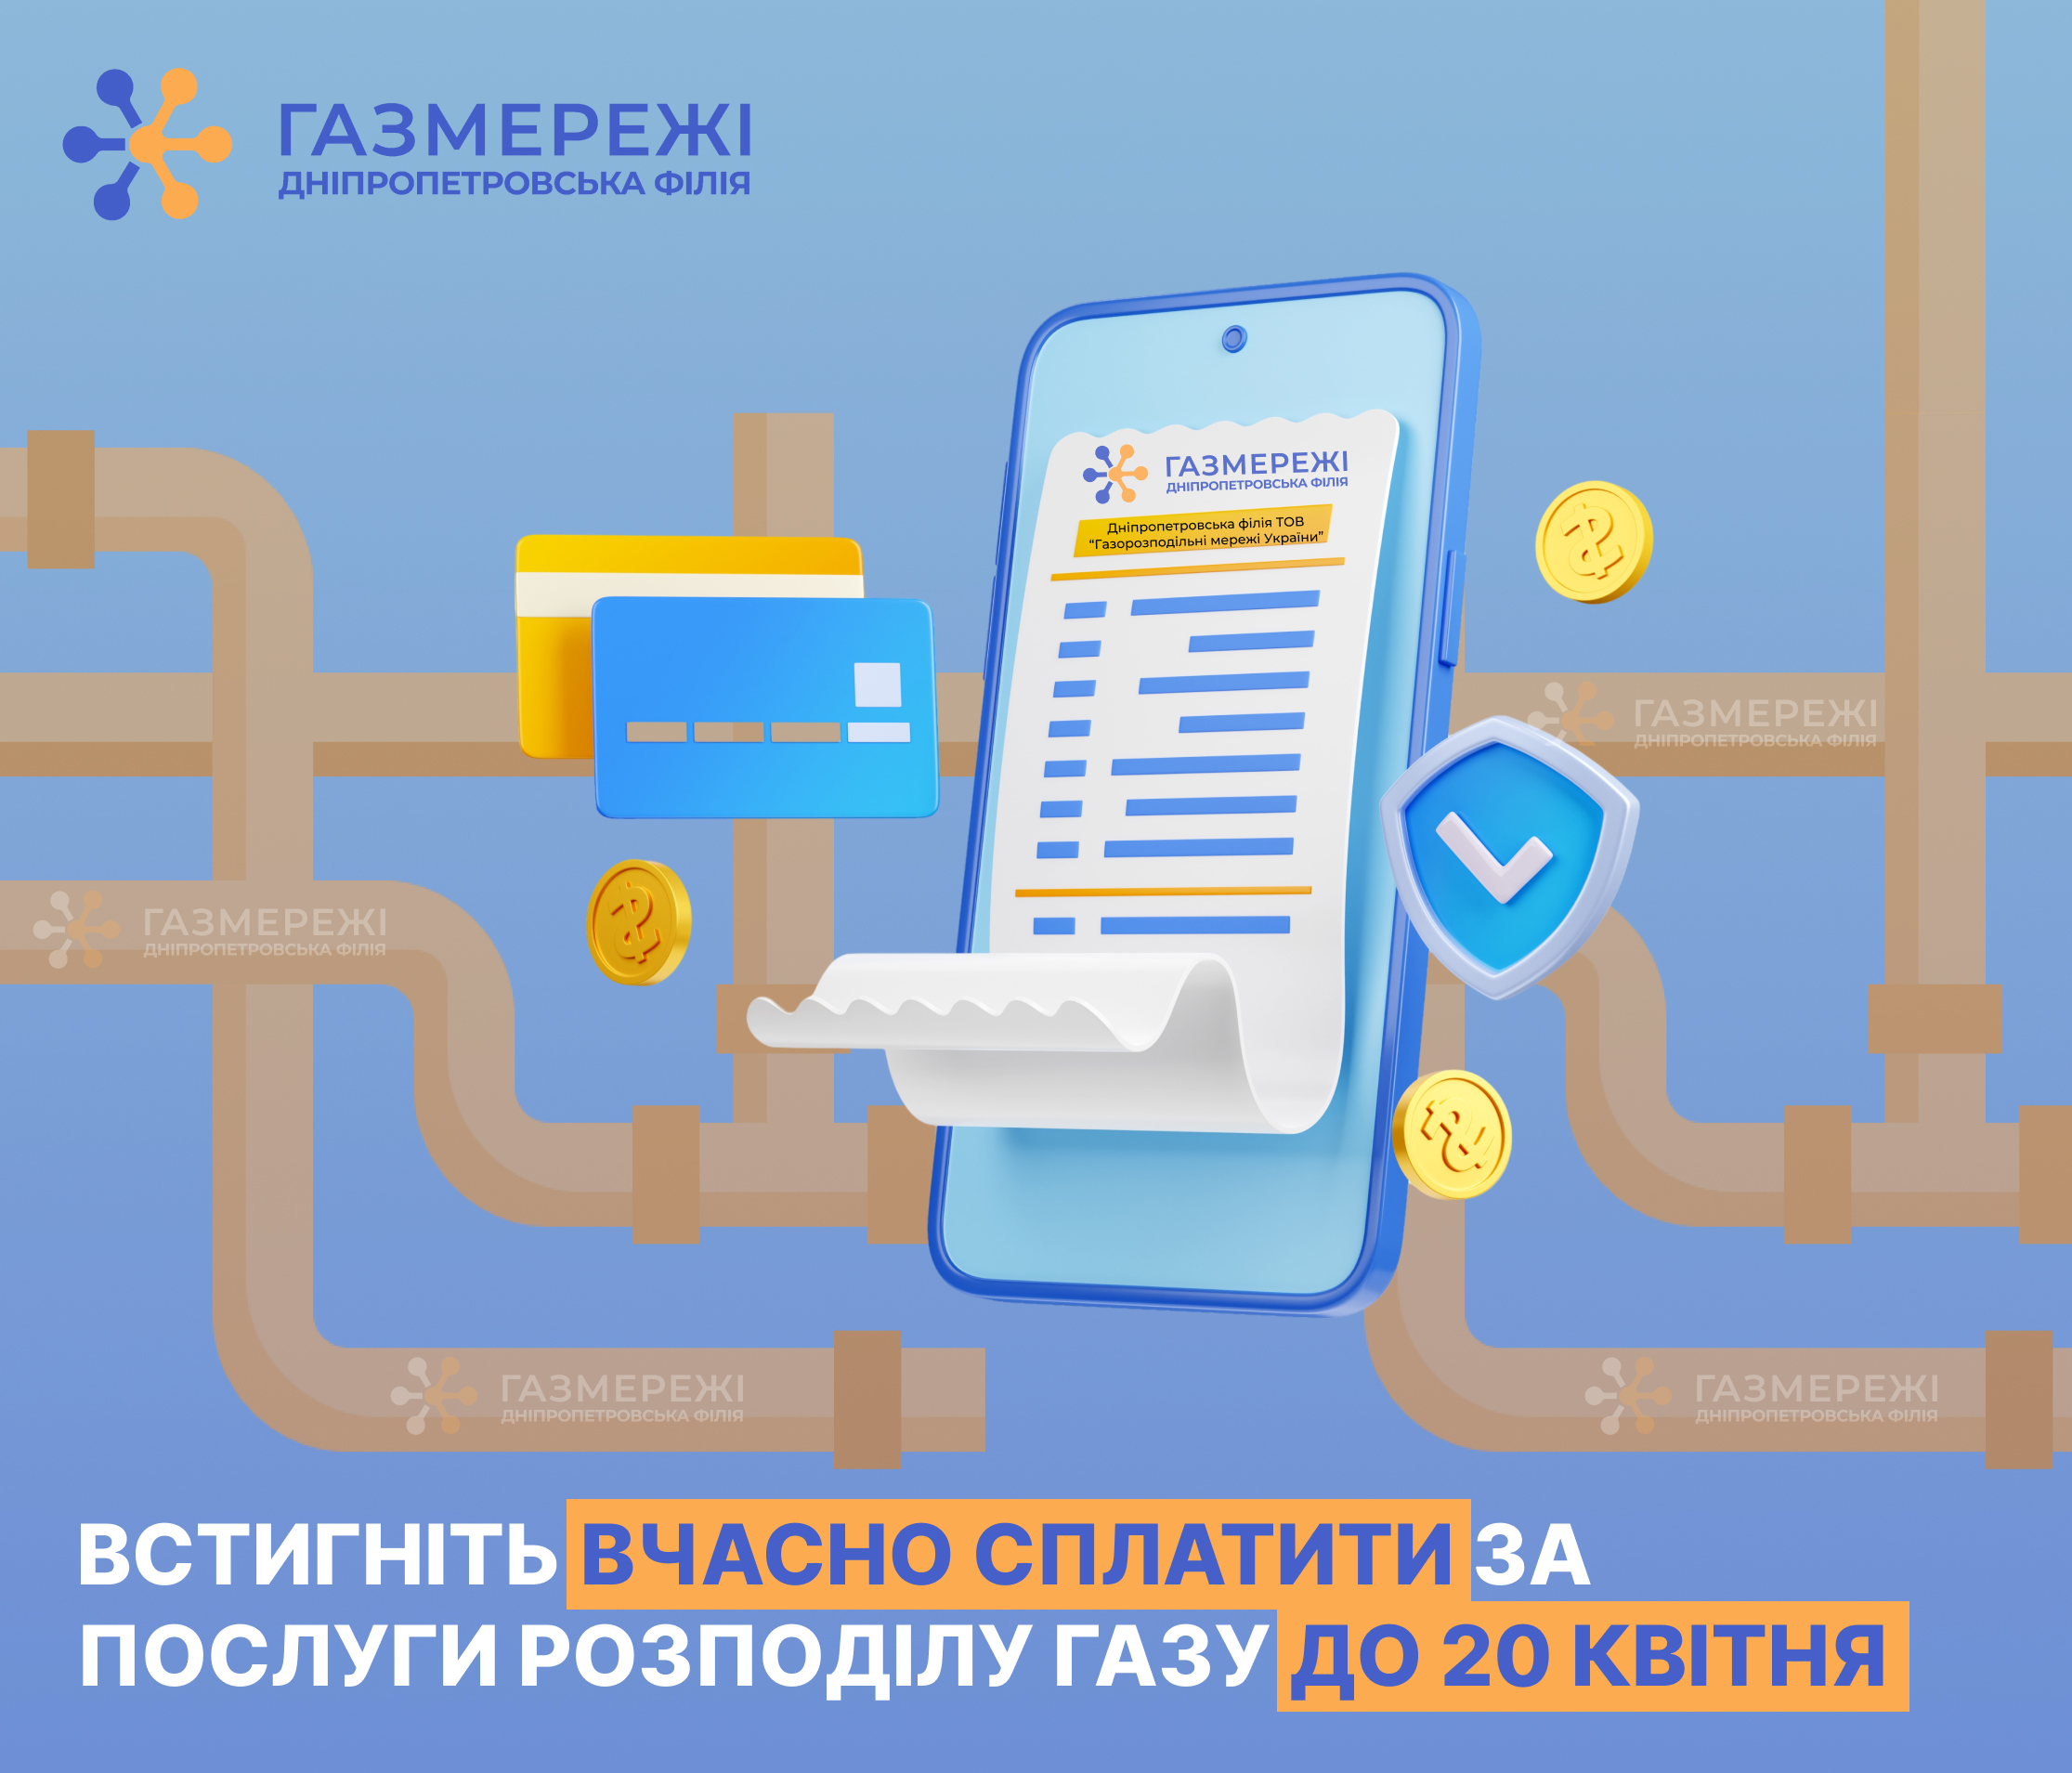 Дніпропетровська філія «Газмережі» нагадує: сплачувати за розподіл газу необхідно до 20 числа щомісяця